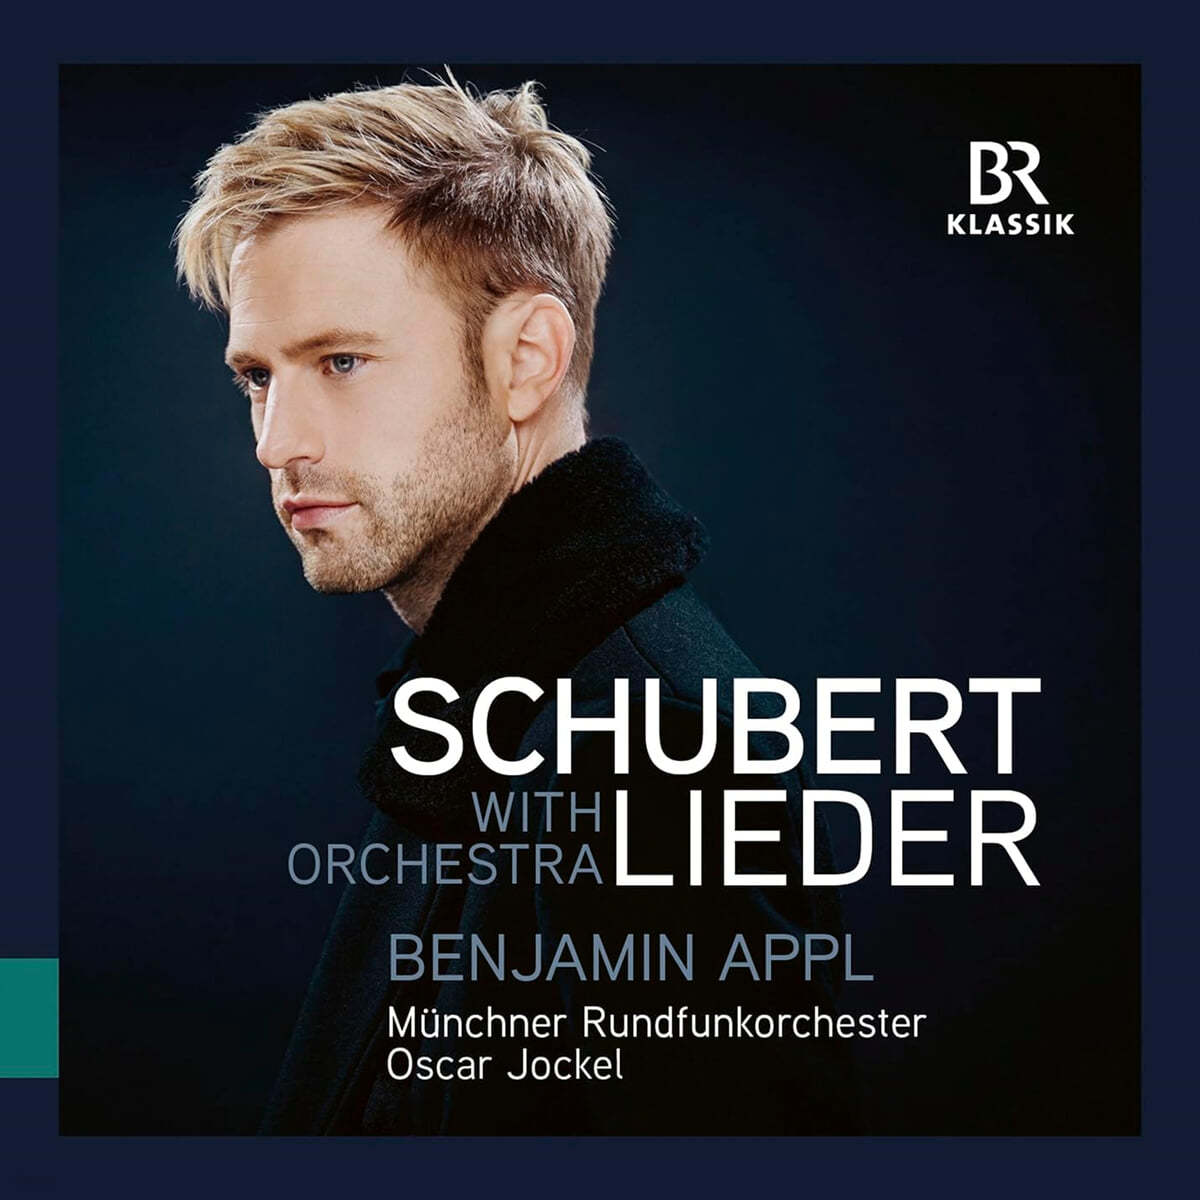 Benjamin Appl 관현악 반주로 노래하는 슈베르트 가곡 (Franz Schubert: Lieder with Orchestra)